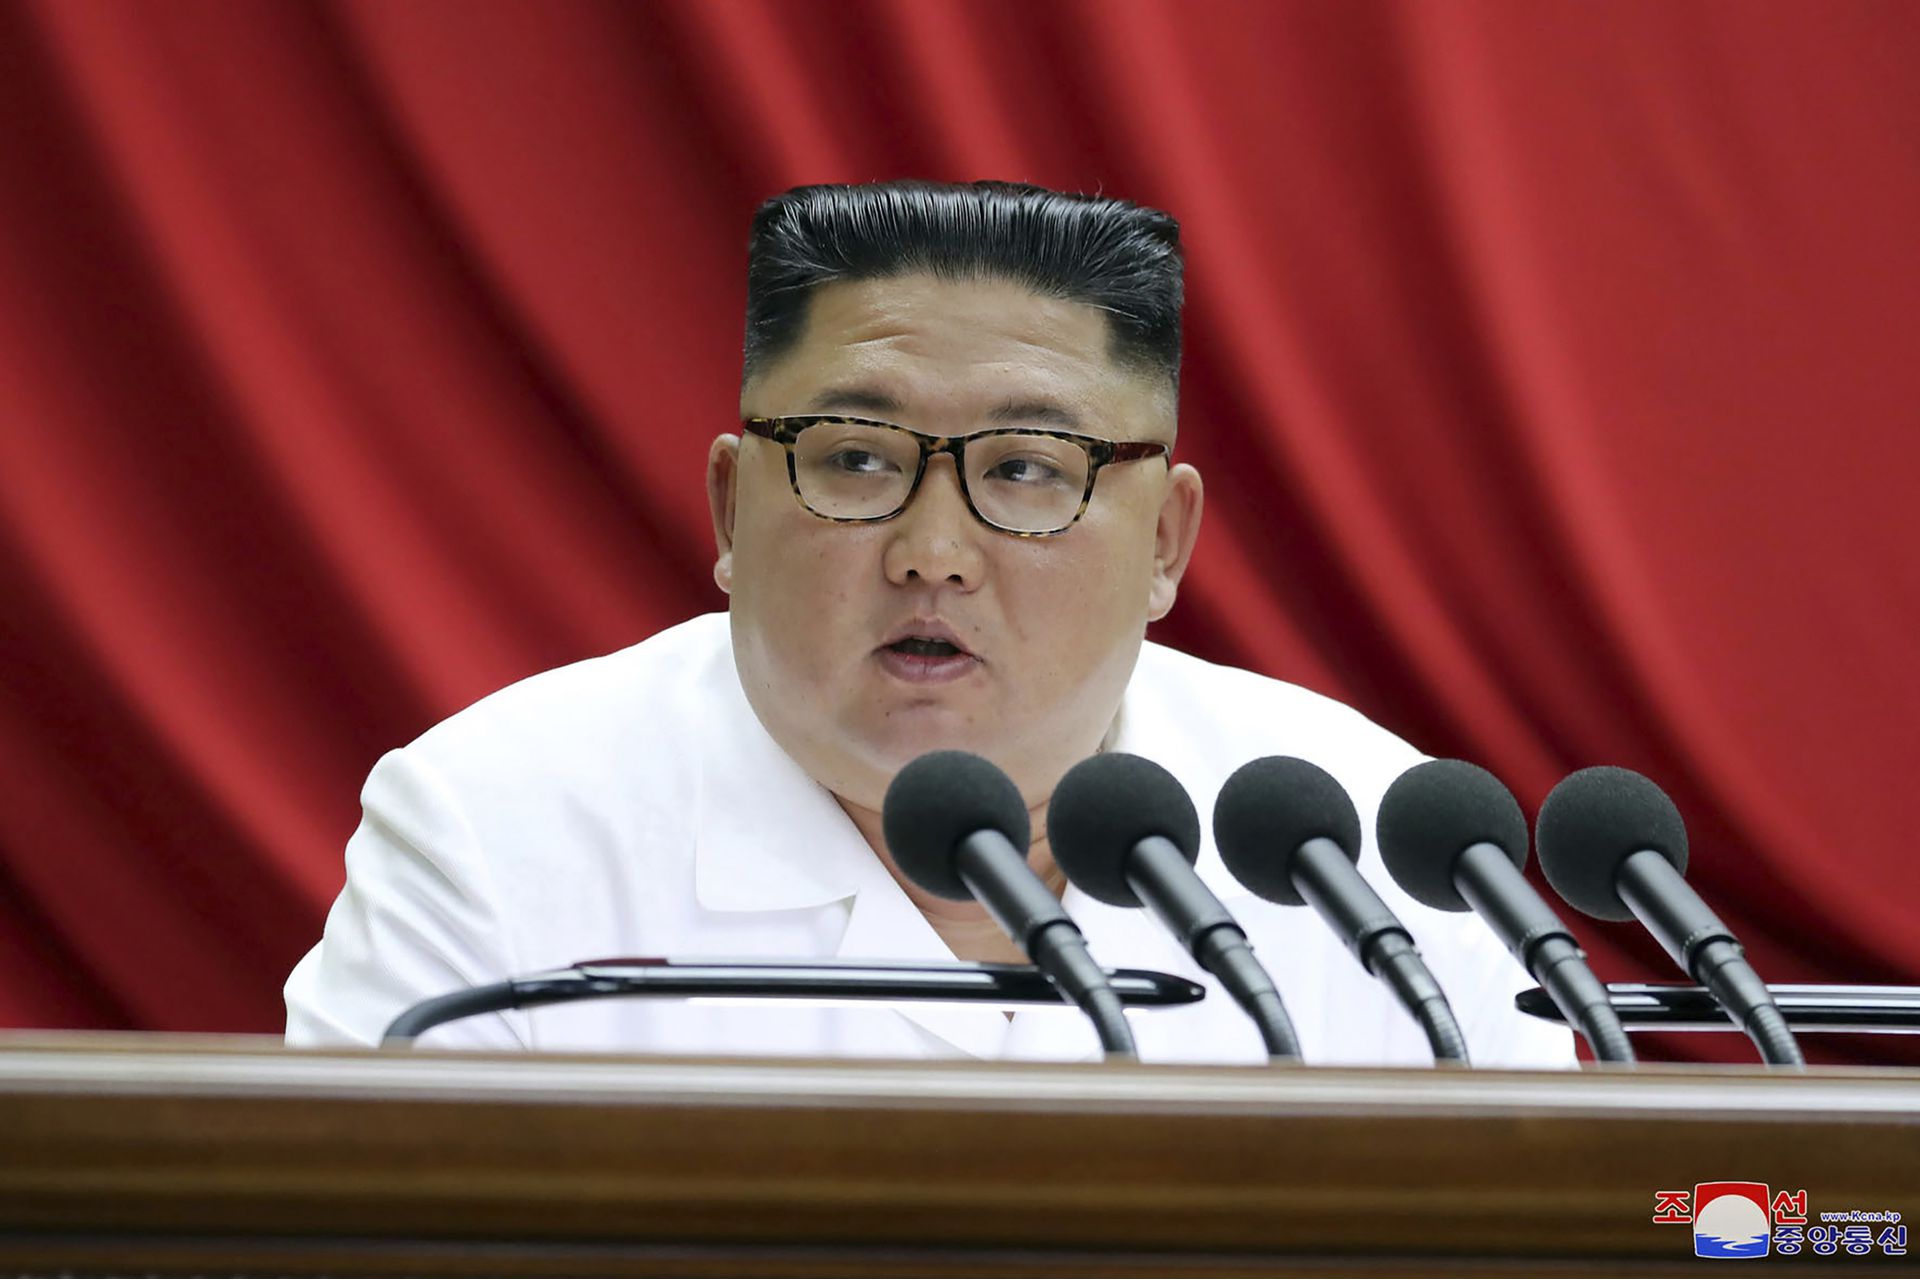 金正恩定性韩朝为敌对关系称永远无法统一 | 聯合ニュース